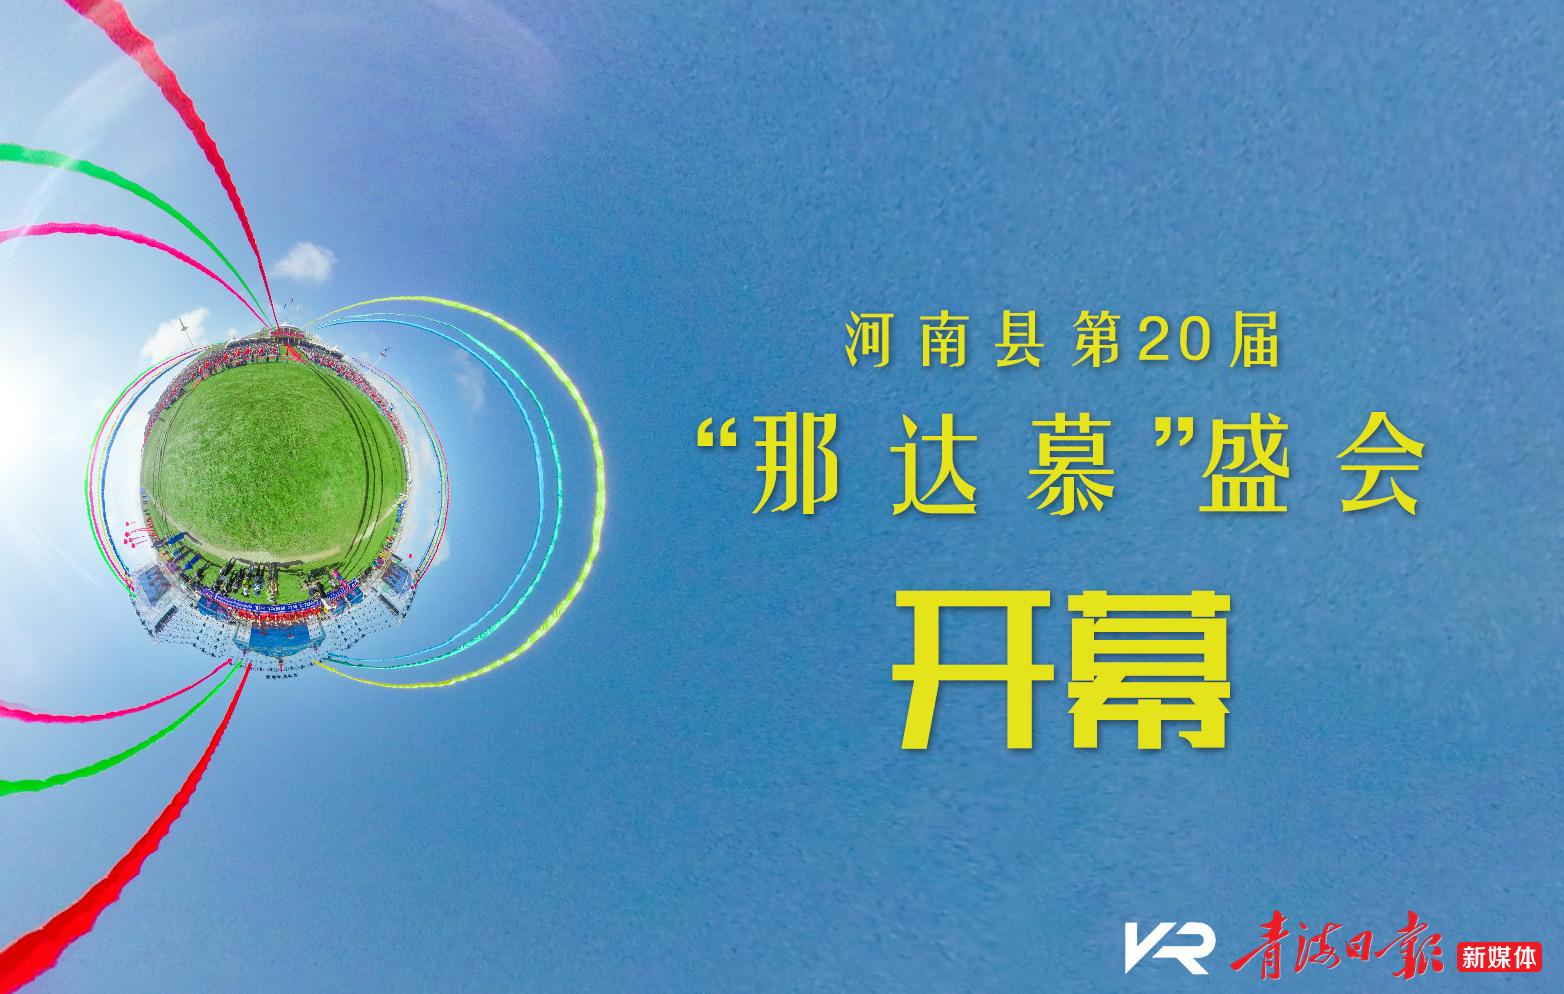 [虚拟现实图集]河南县第20届“那达慕”盛会开幕